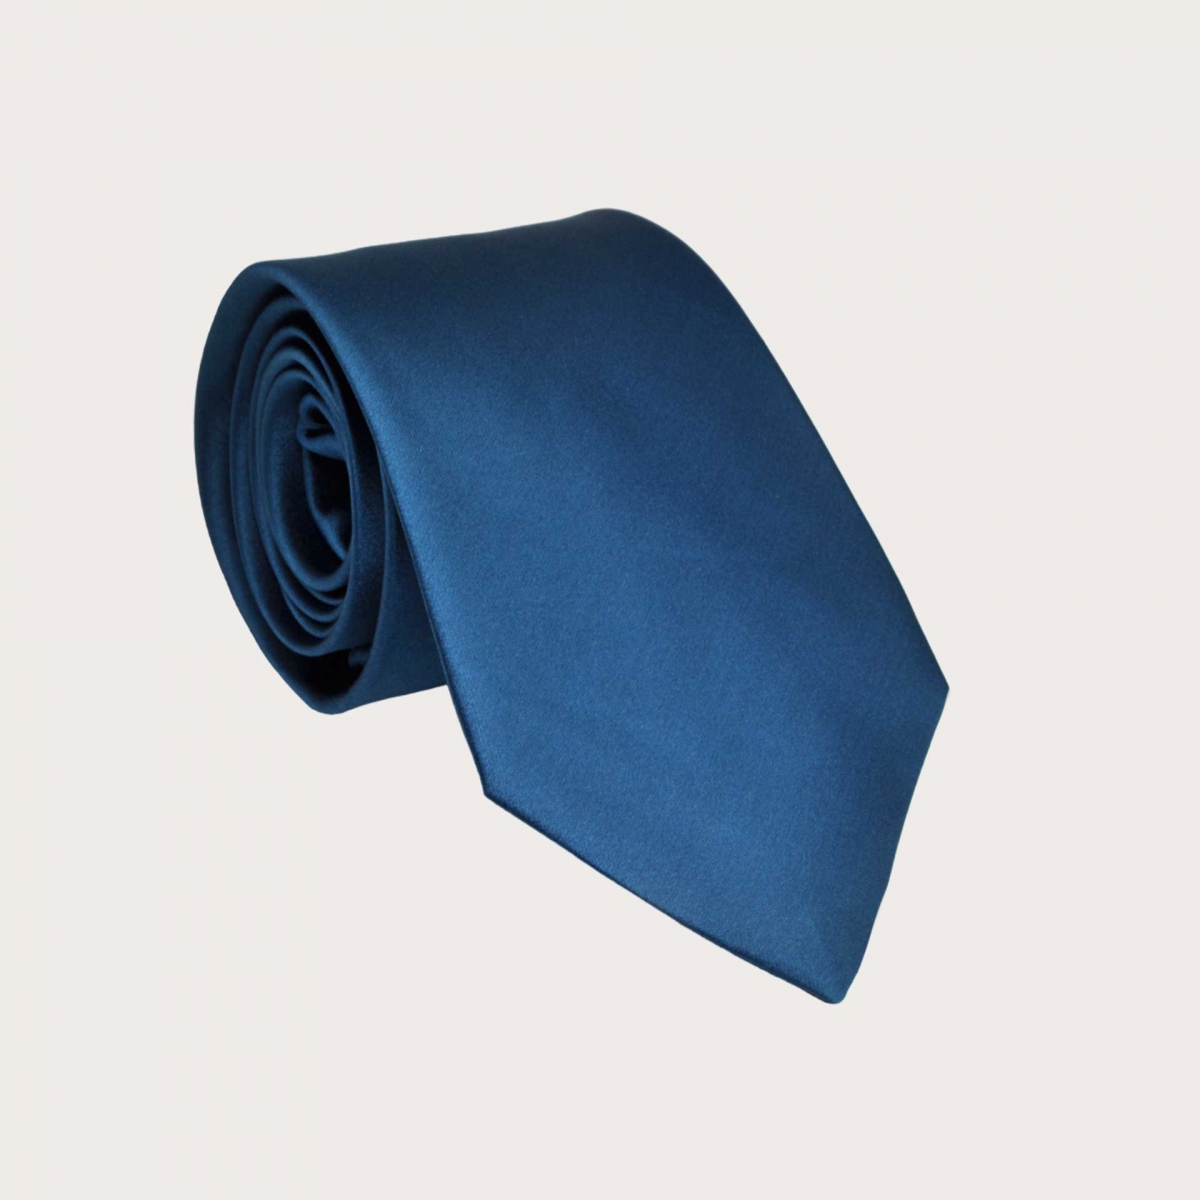 BRUCLE Klassische Krawatte aus Seidensatin, blau